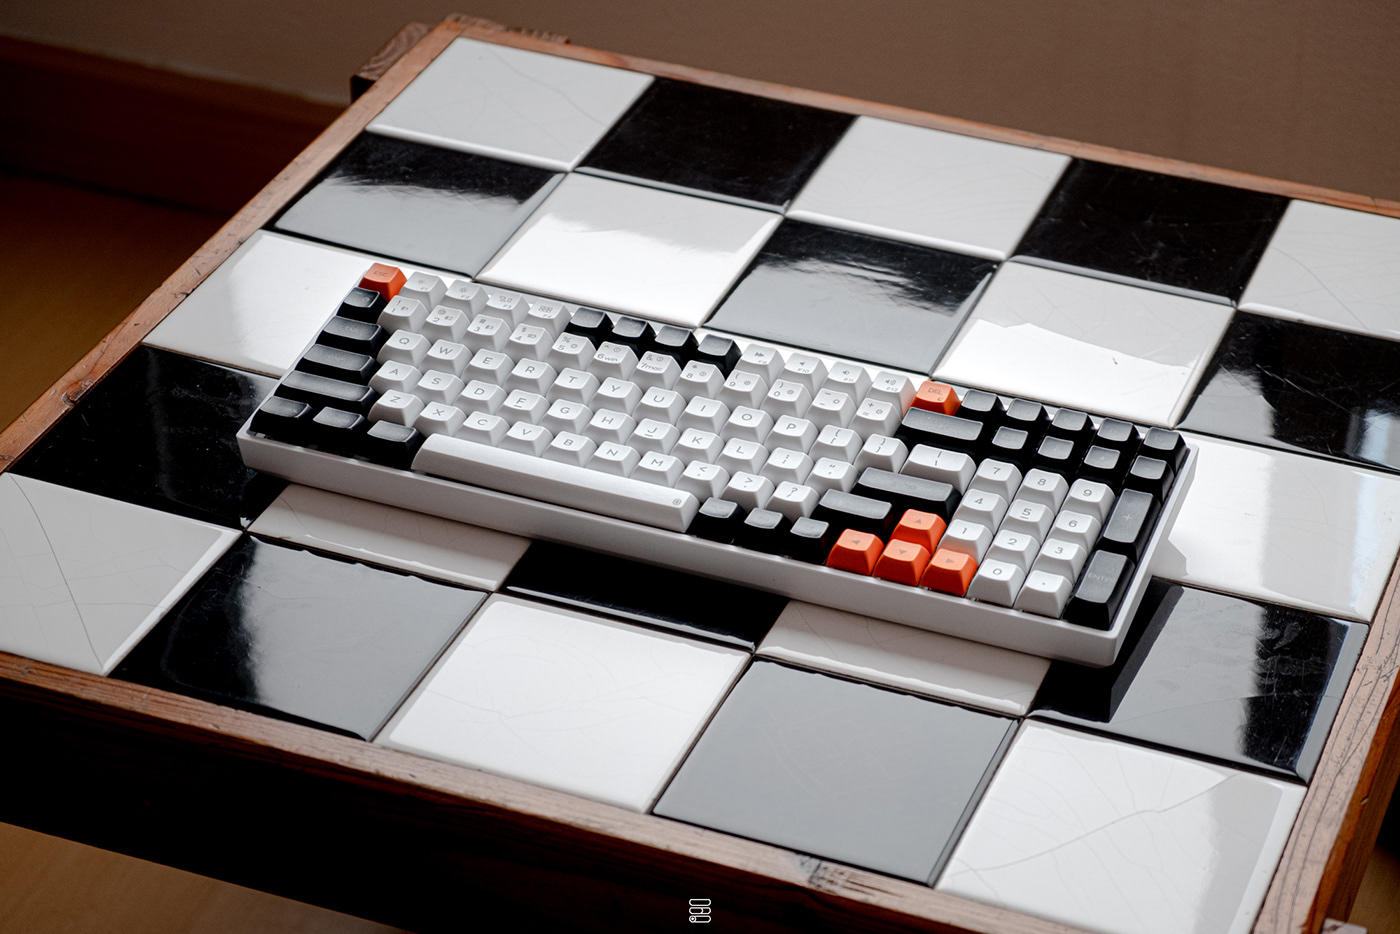 design keyboard keyboard design keyboards keycaps mechanical keyboard  Render Technology wireless wireless keyboard